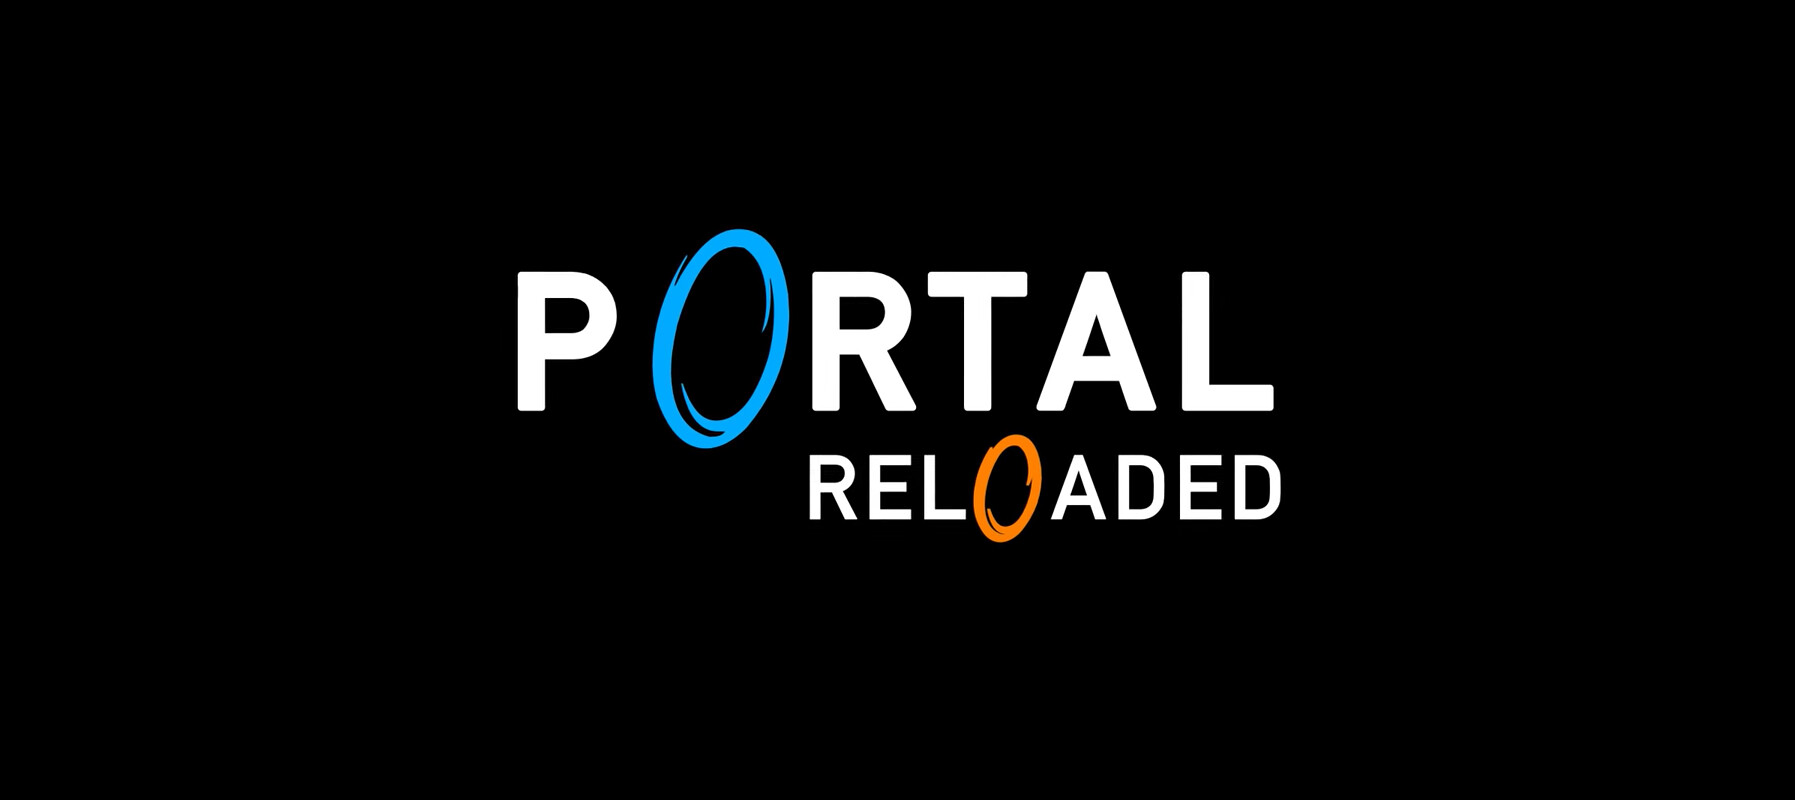 portal reloaded 25